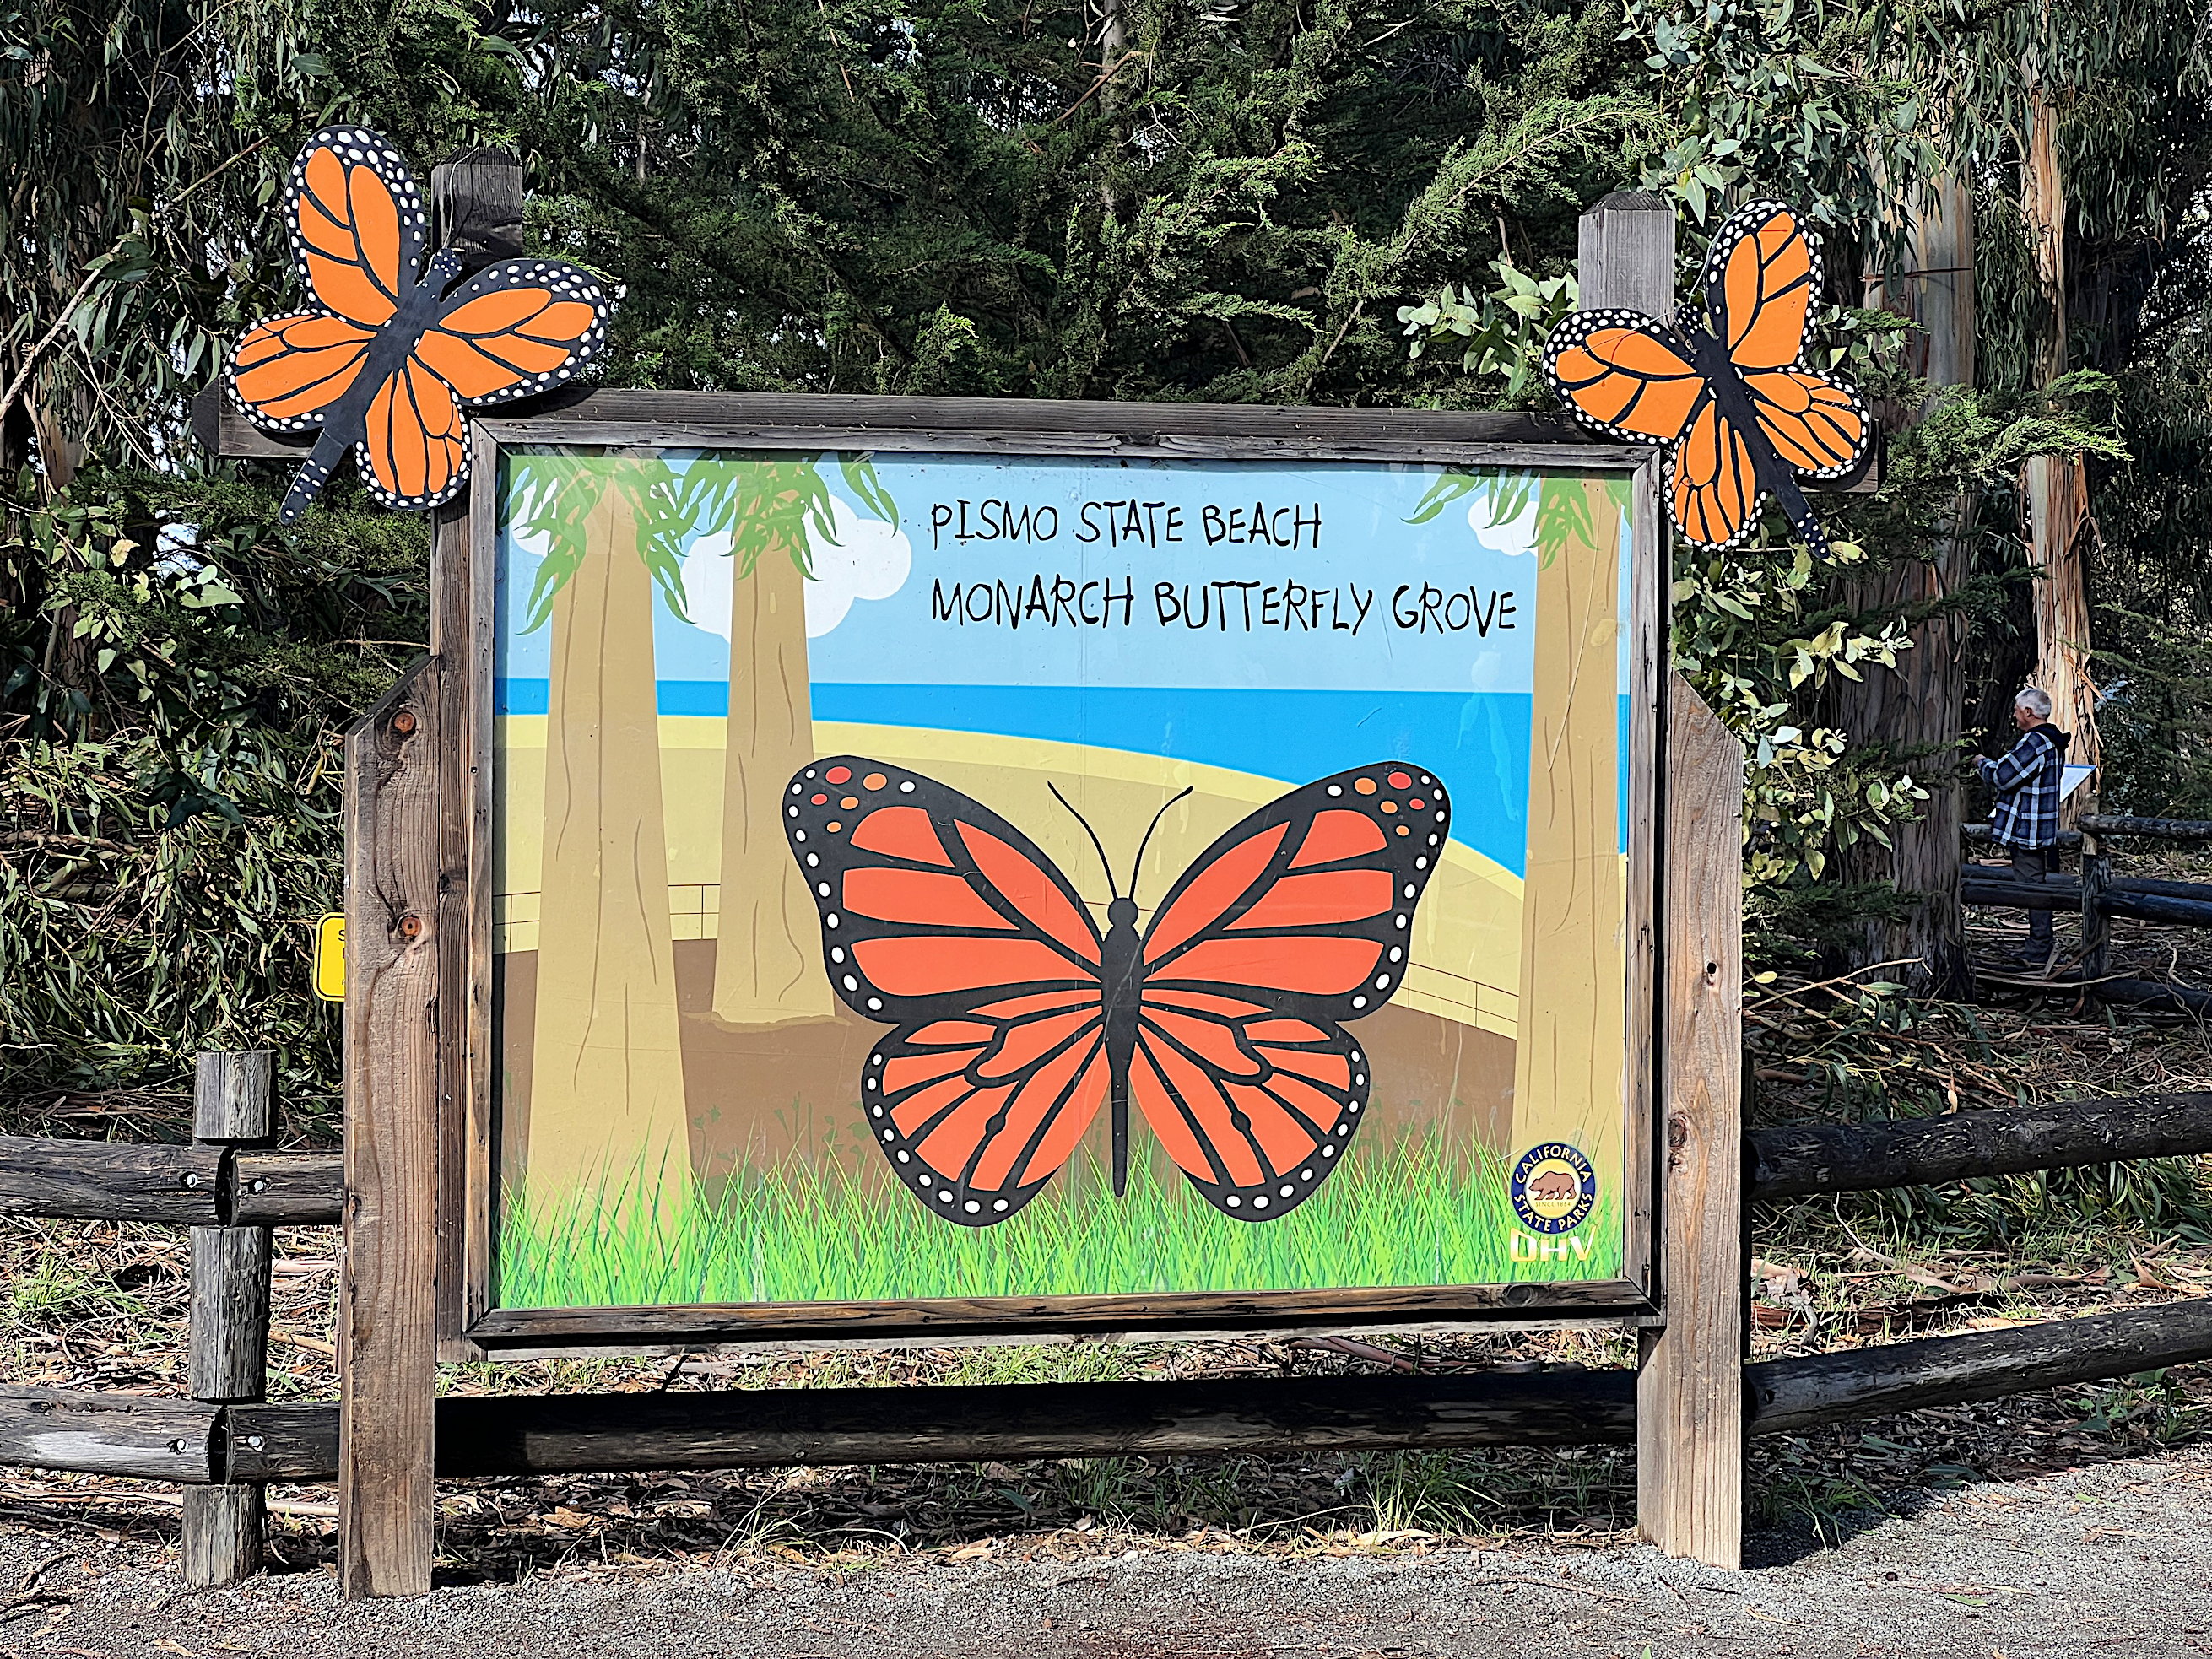 Begrüssungsschild, zeigt einen gemalten riesigen Monarch-Falter und die Aufschrift: «Pismo State Beach Monarch Butterfly Grove»